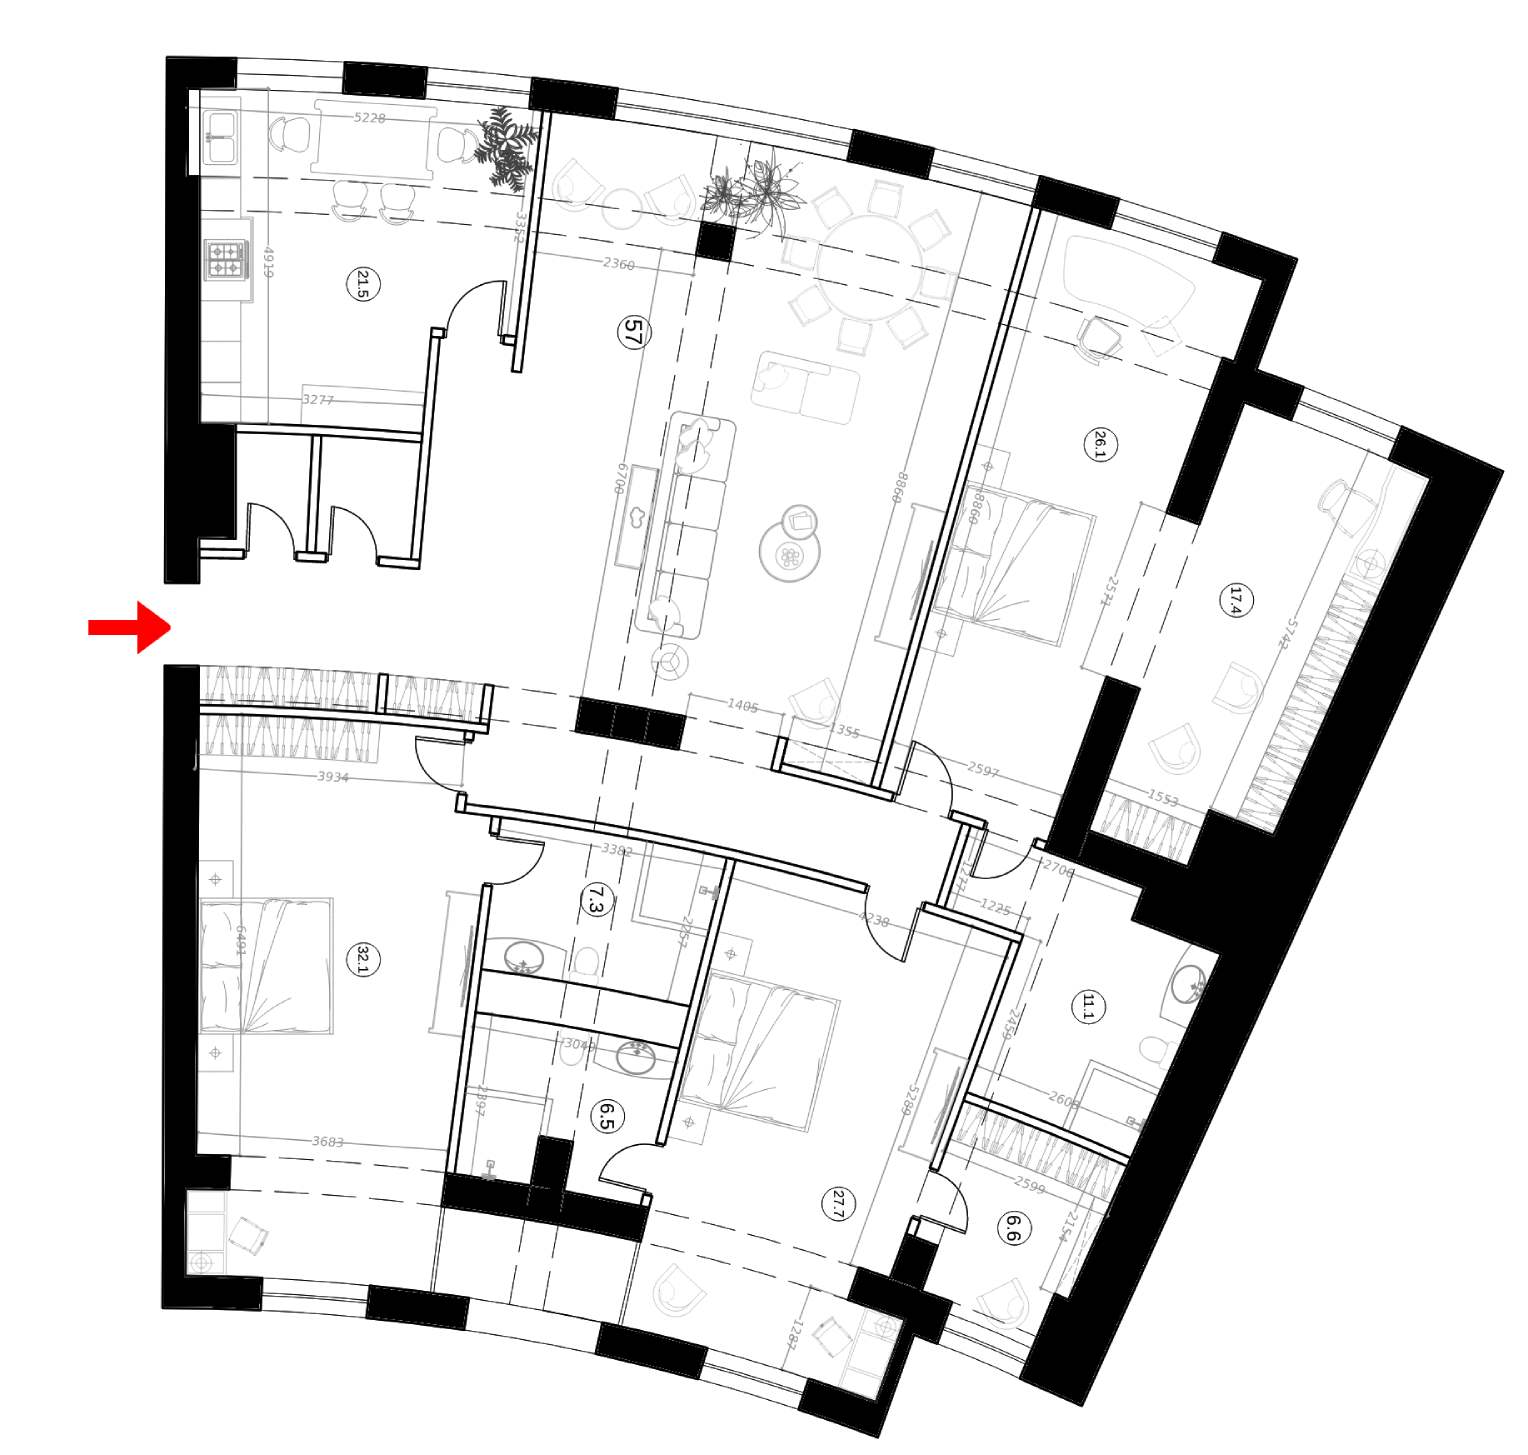 Image Floor Plans